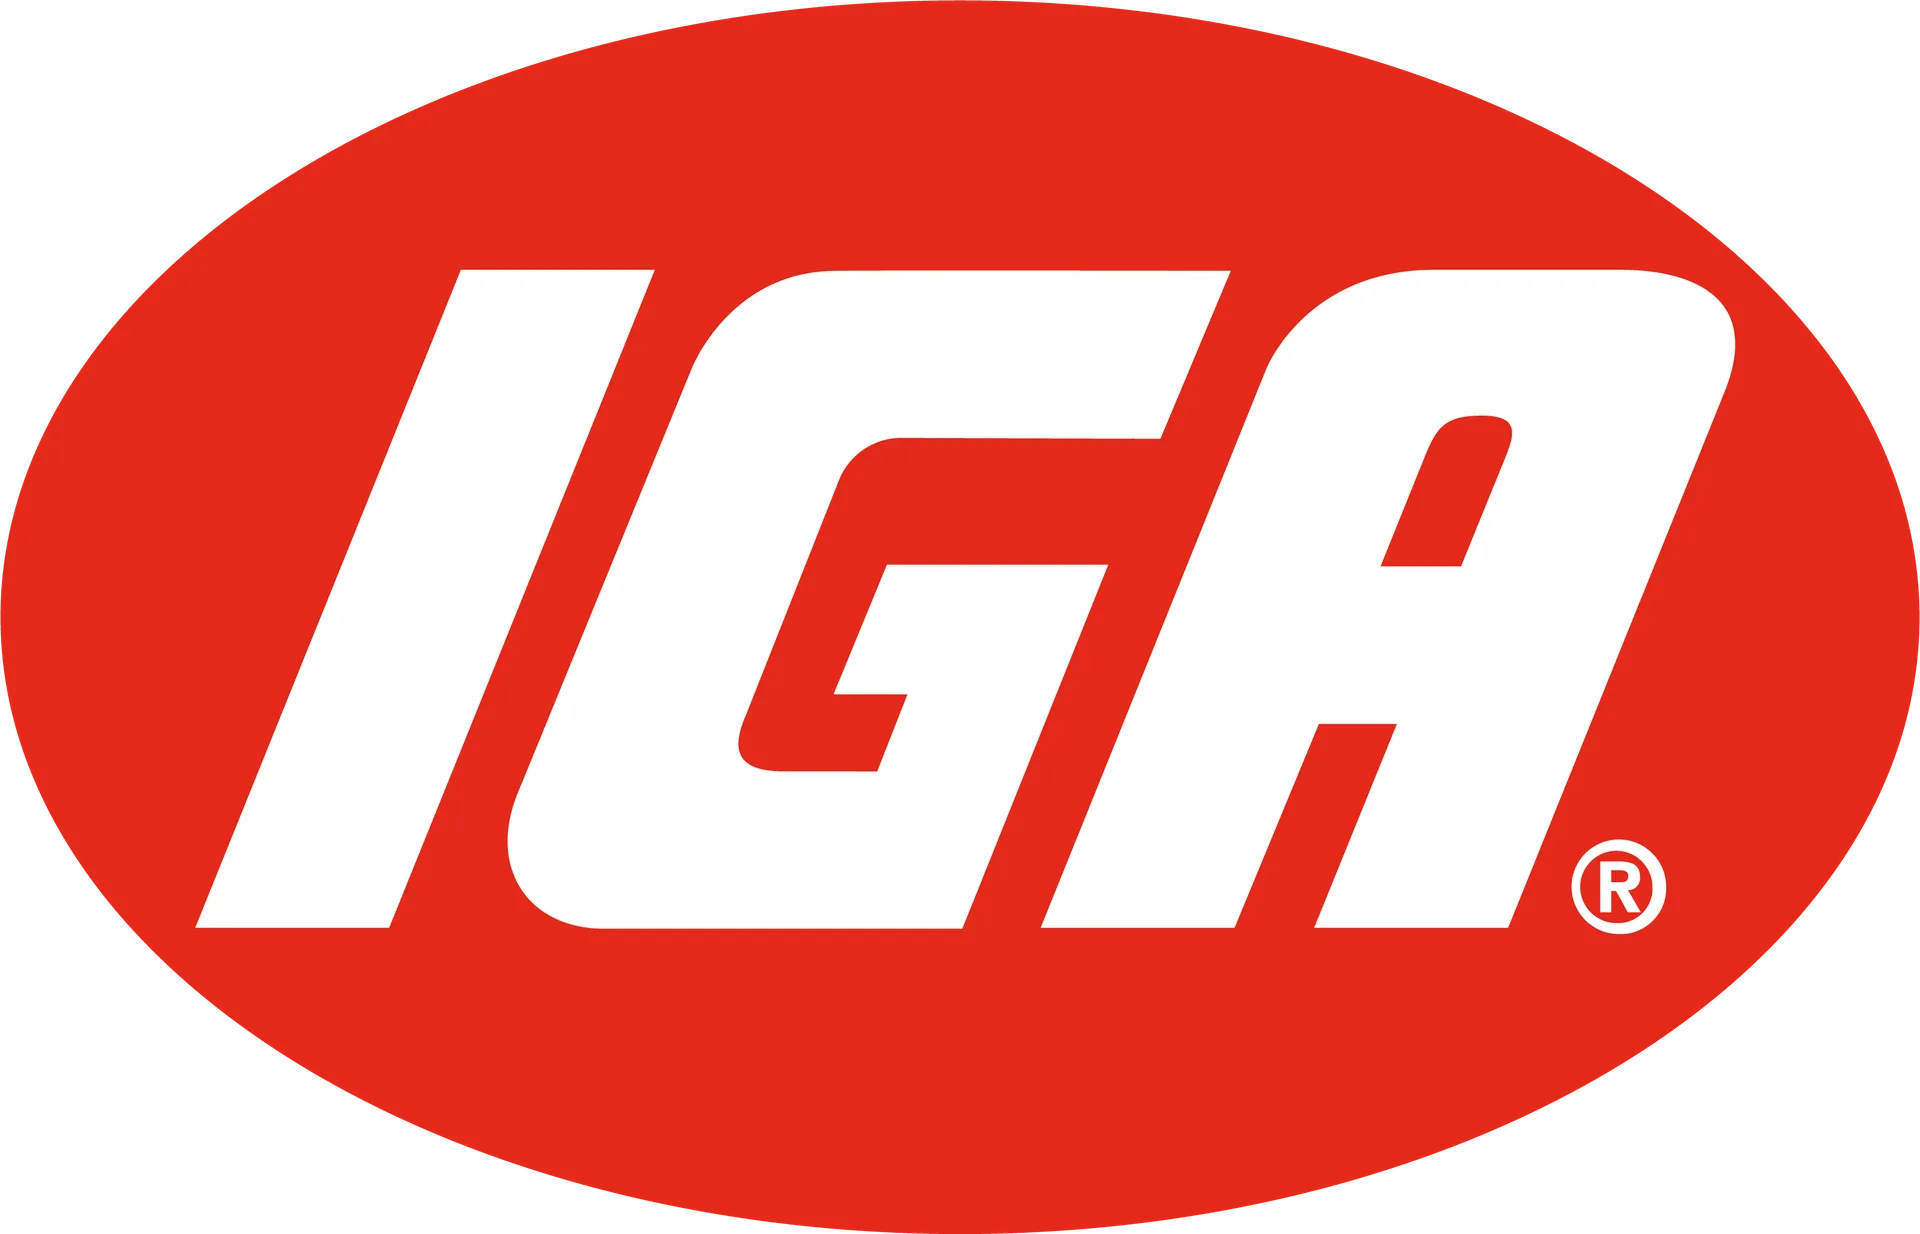 IGA XPRESS logo of current flyer